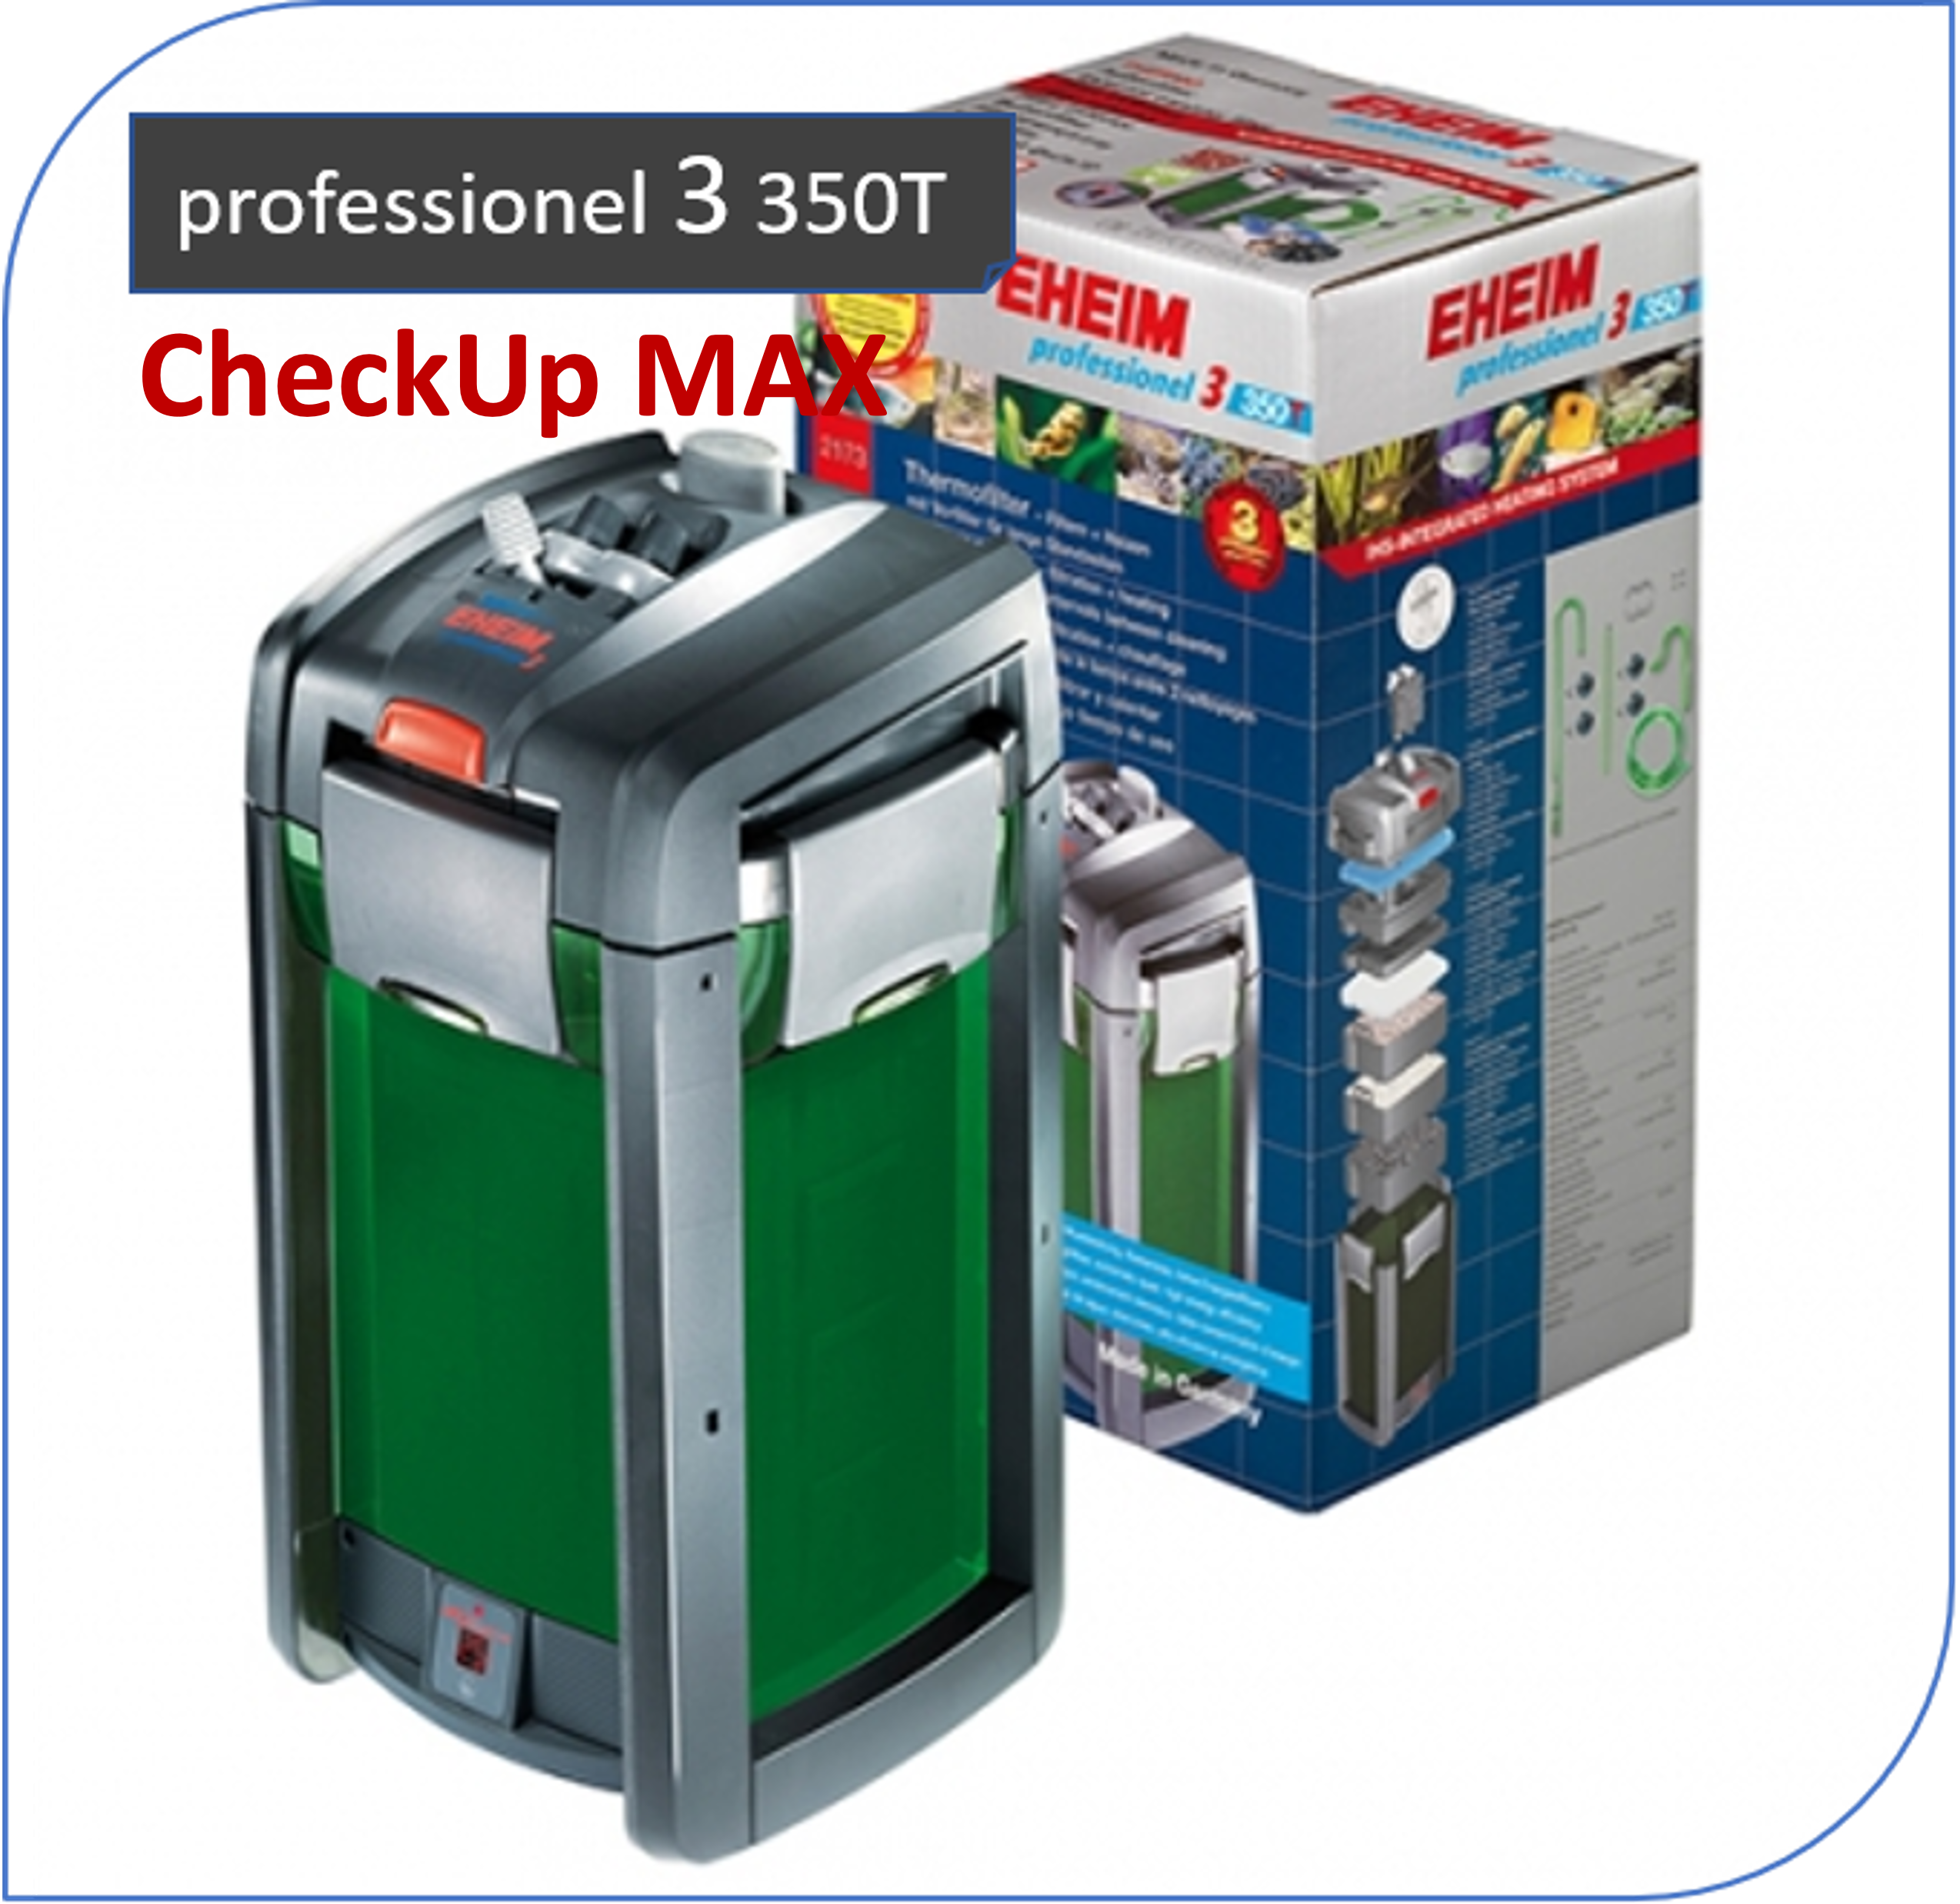 CheckUp MAX - inklusive Tausch der Ansaughilfe und Heizplatine für professionel 3 350T